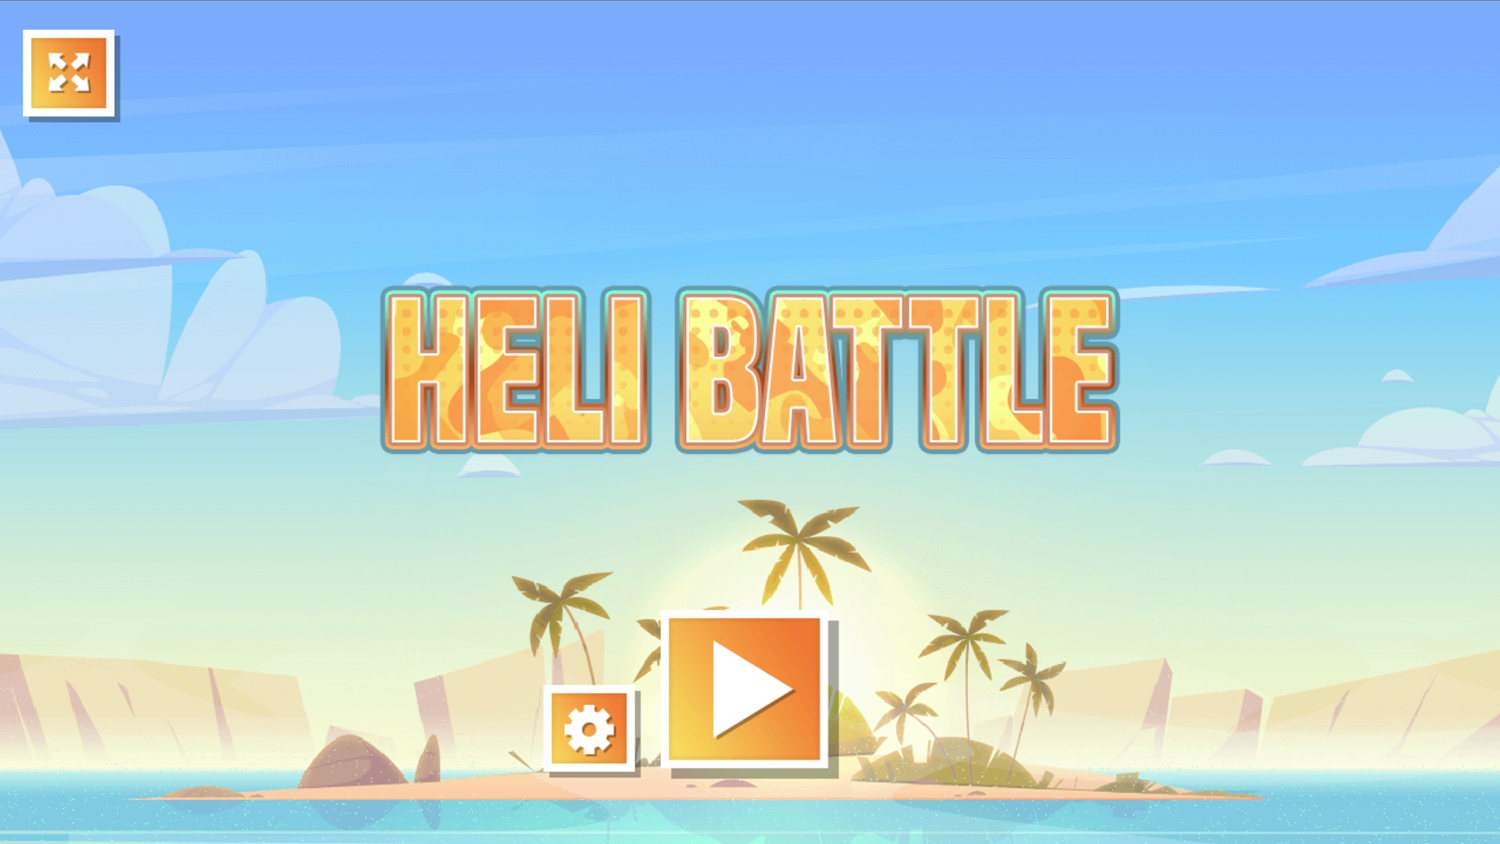 Heli Battle Game Welcome Screen Screenshot.